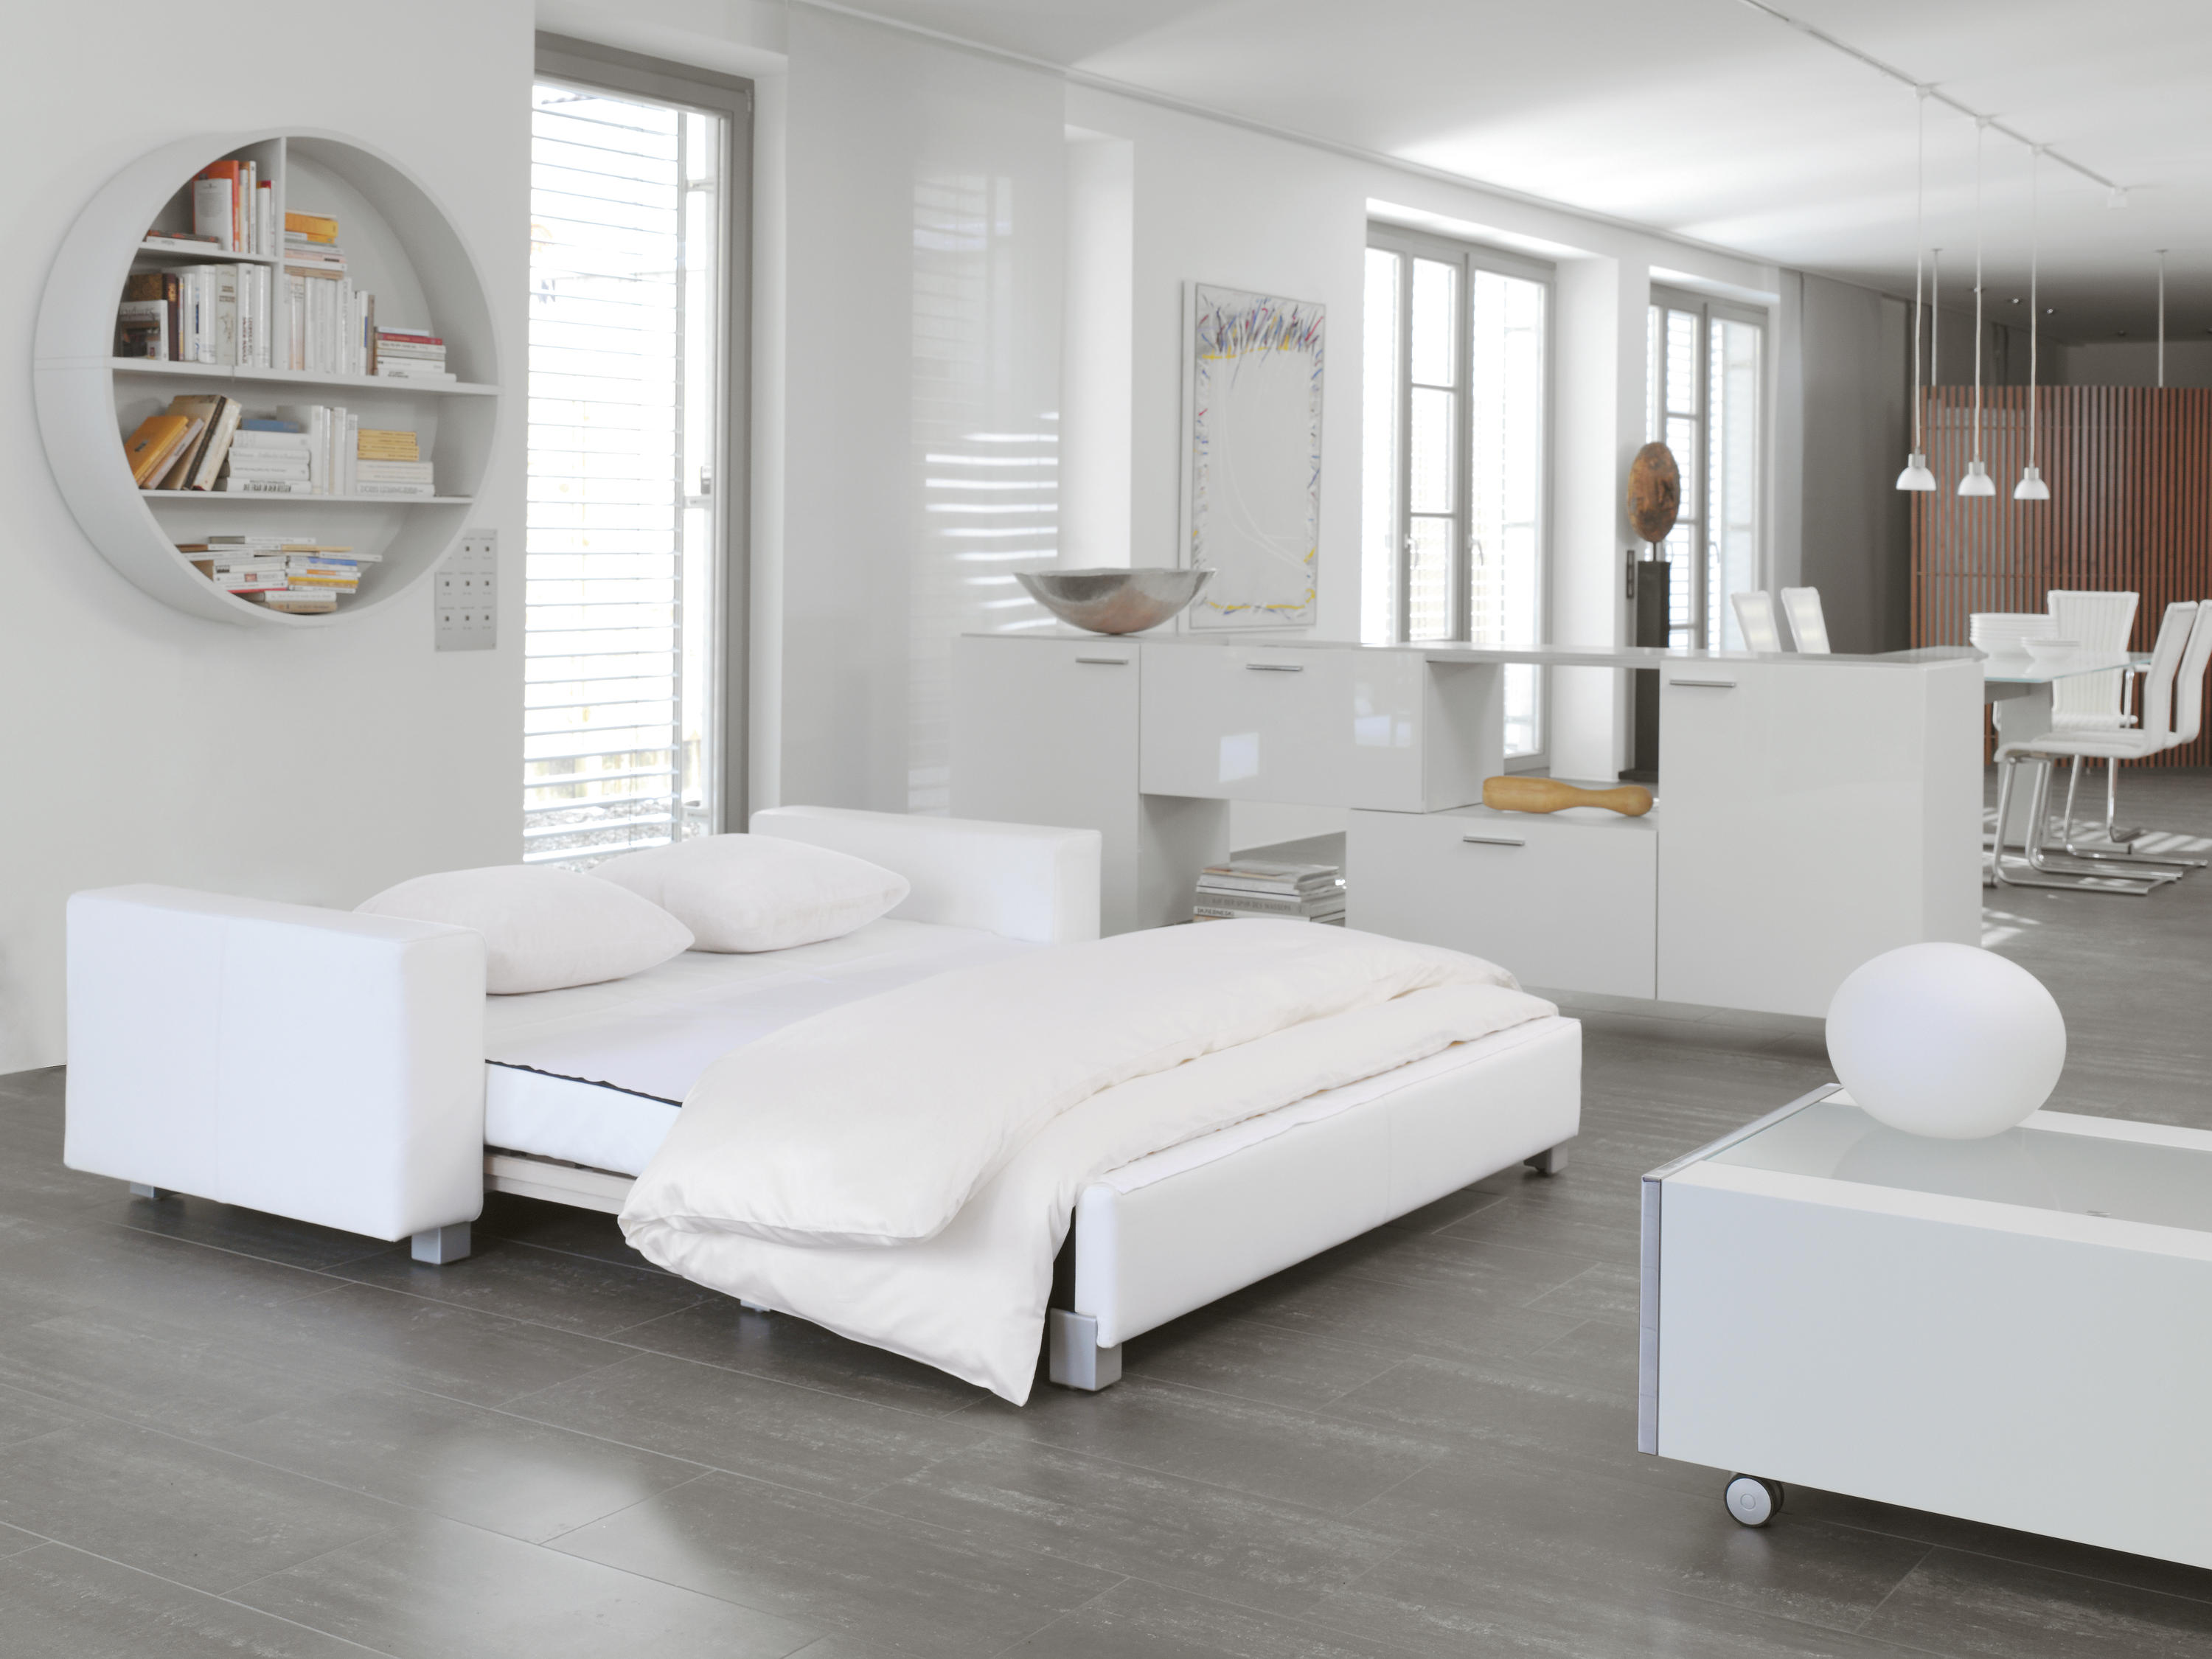 Guerrero lucha Elaborar Minnie Sofa-bed & muebles de diseño | Architonic